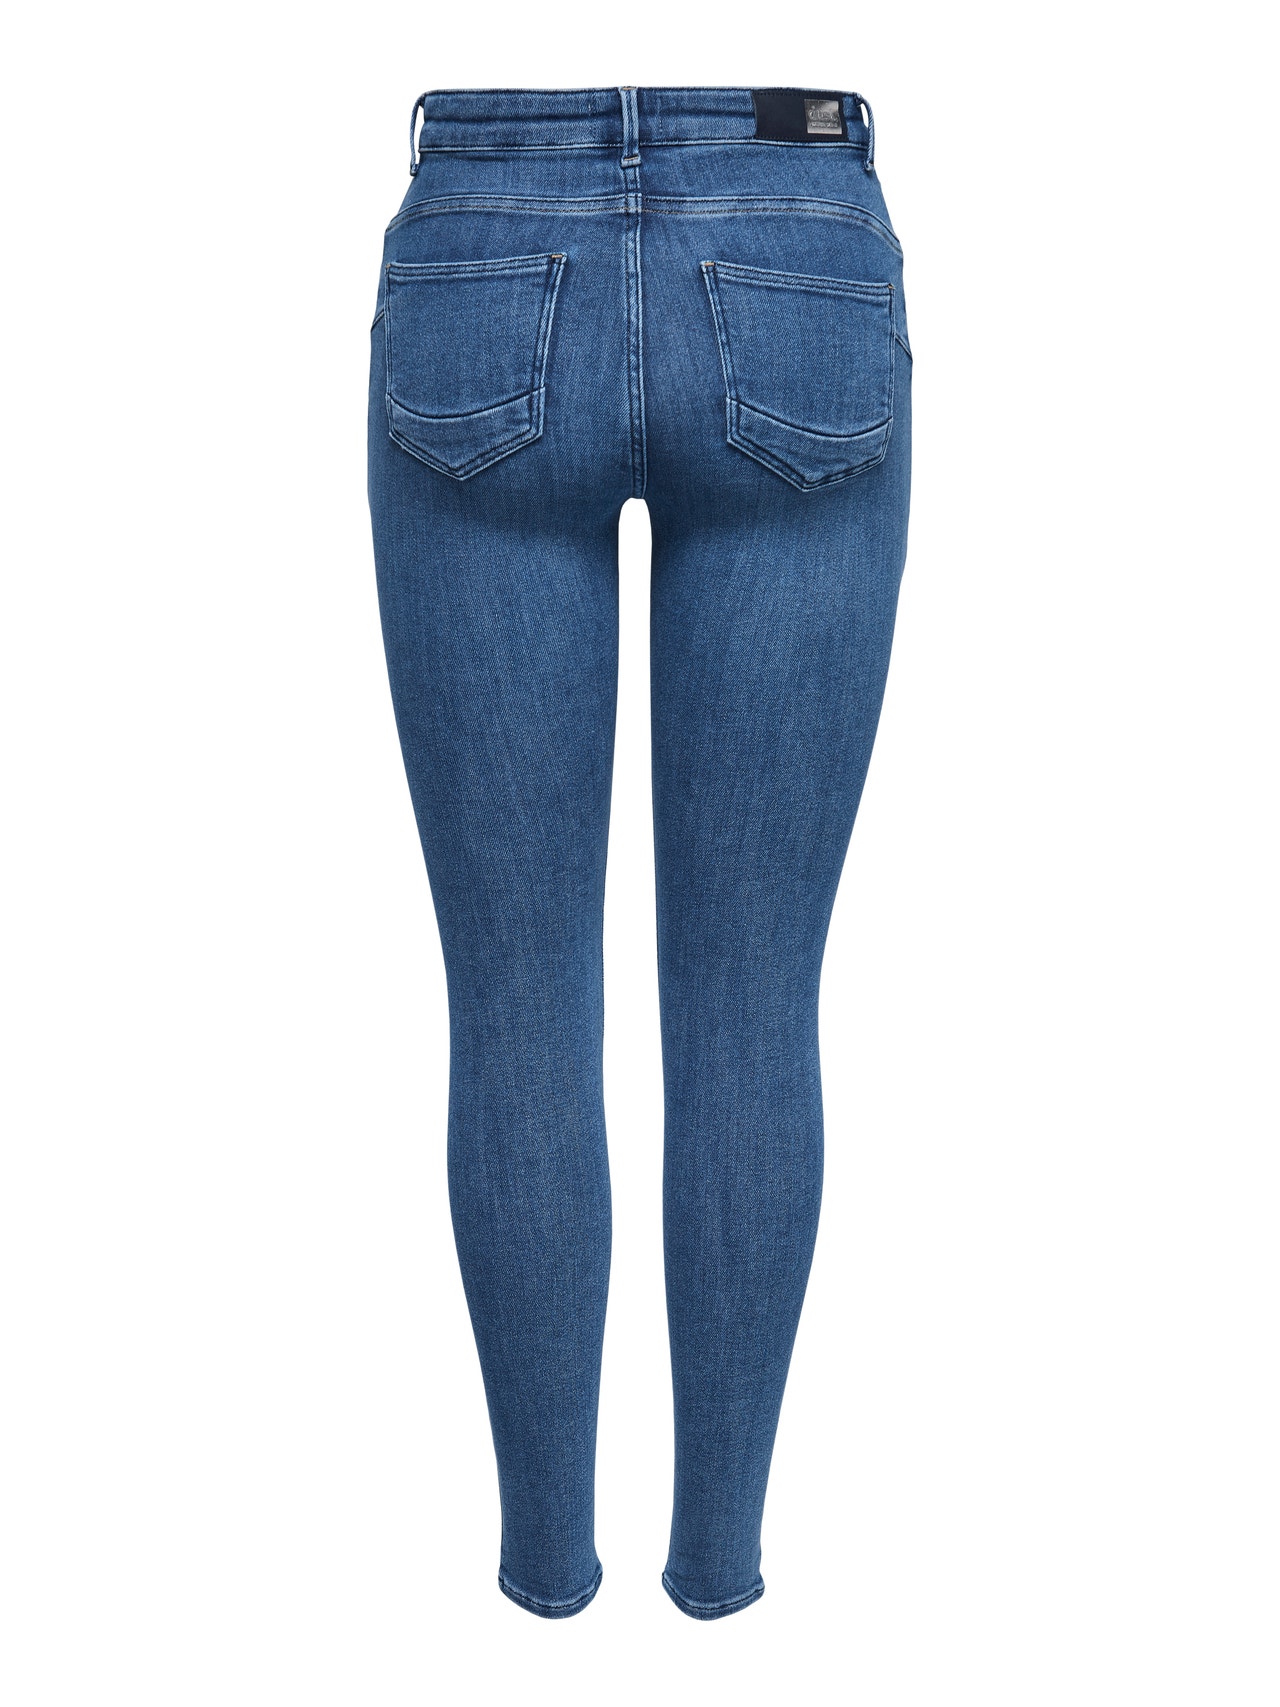 ONLY Jeans Skinny Fit -Light Blue Denim - 15169892